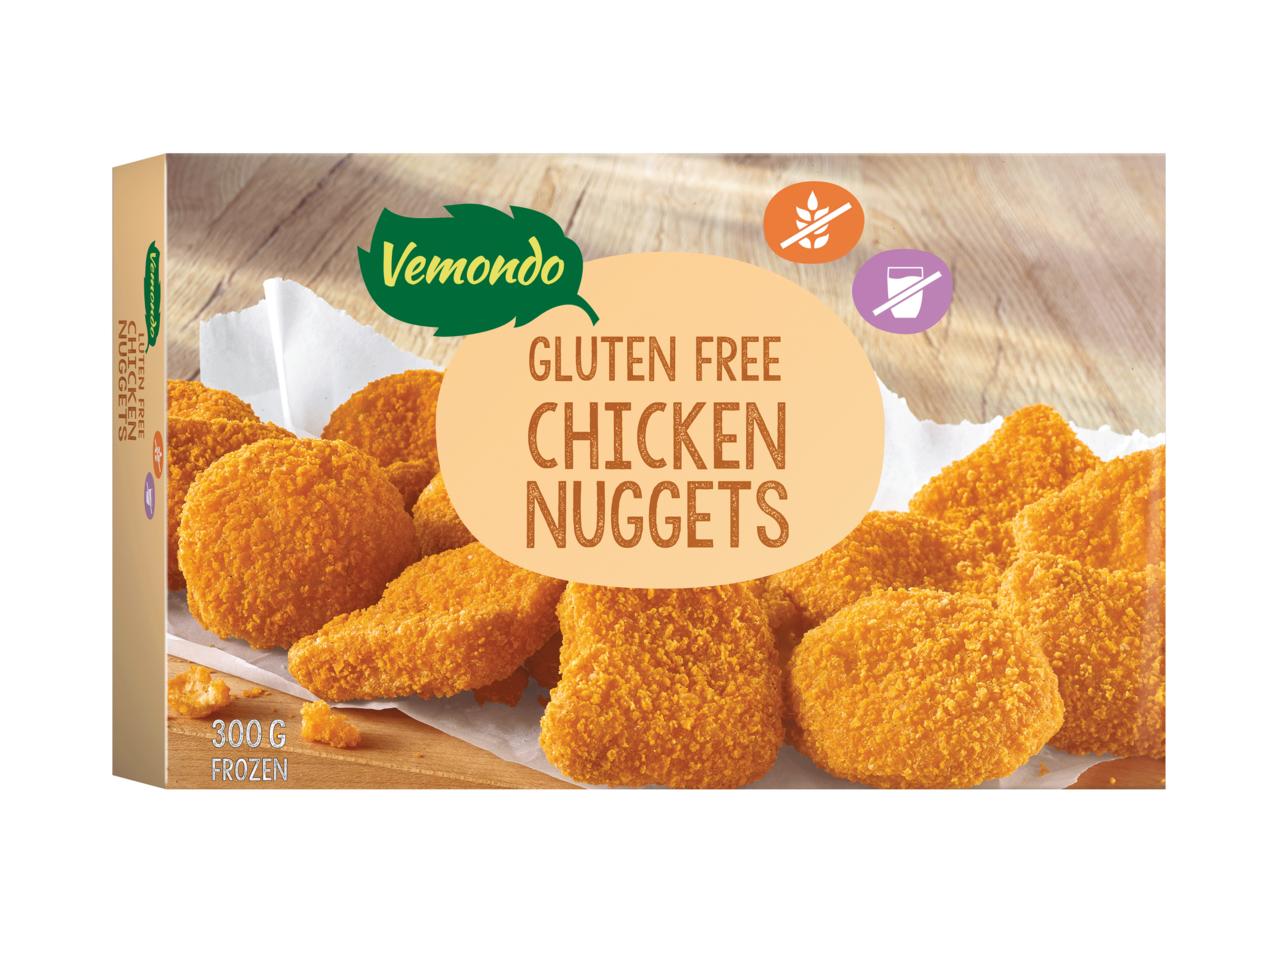 VEMONDO Gluten-Free Chicken Nuggets